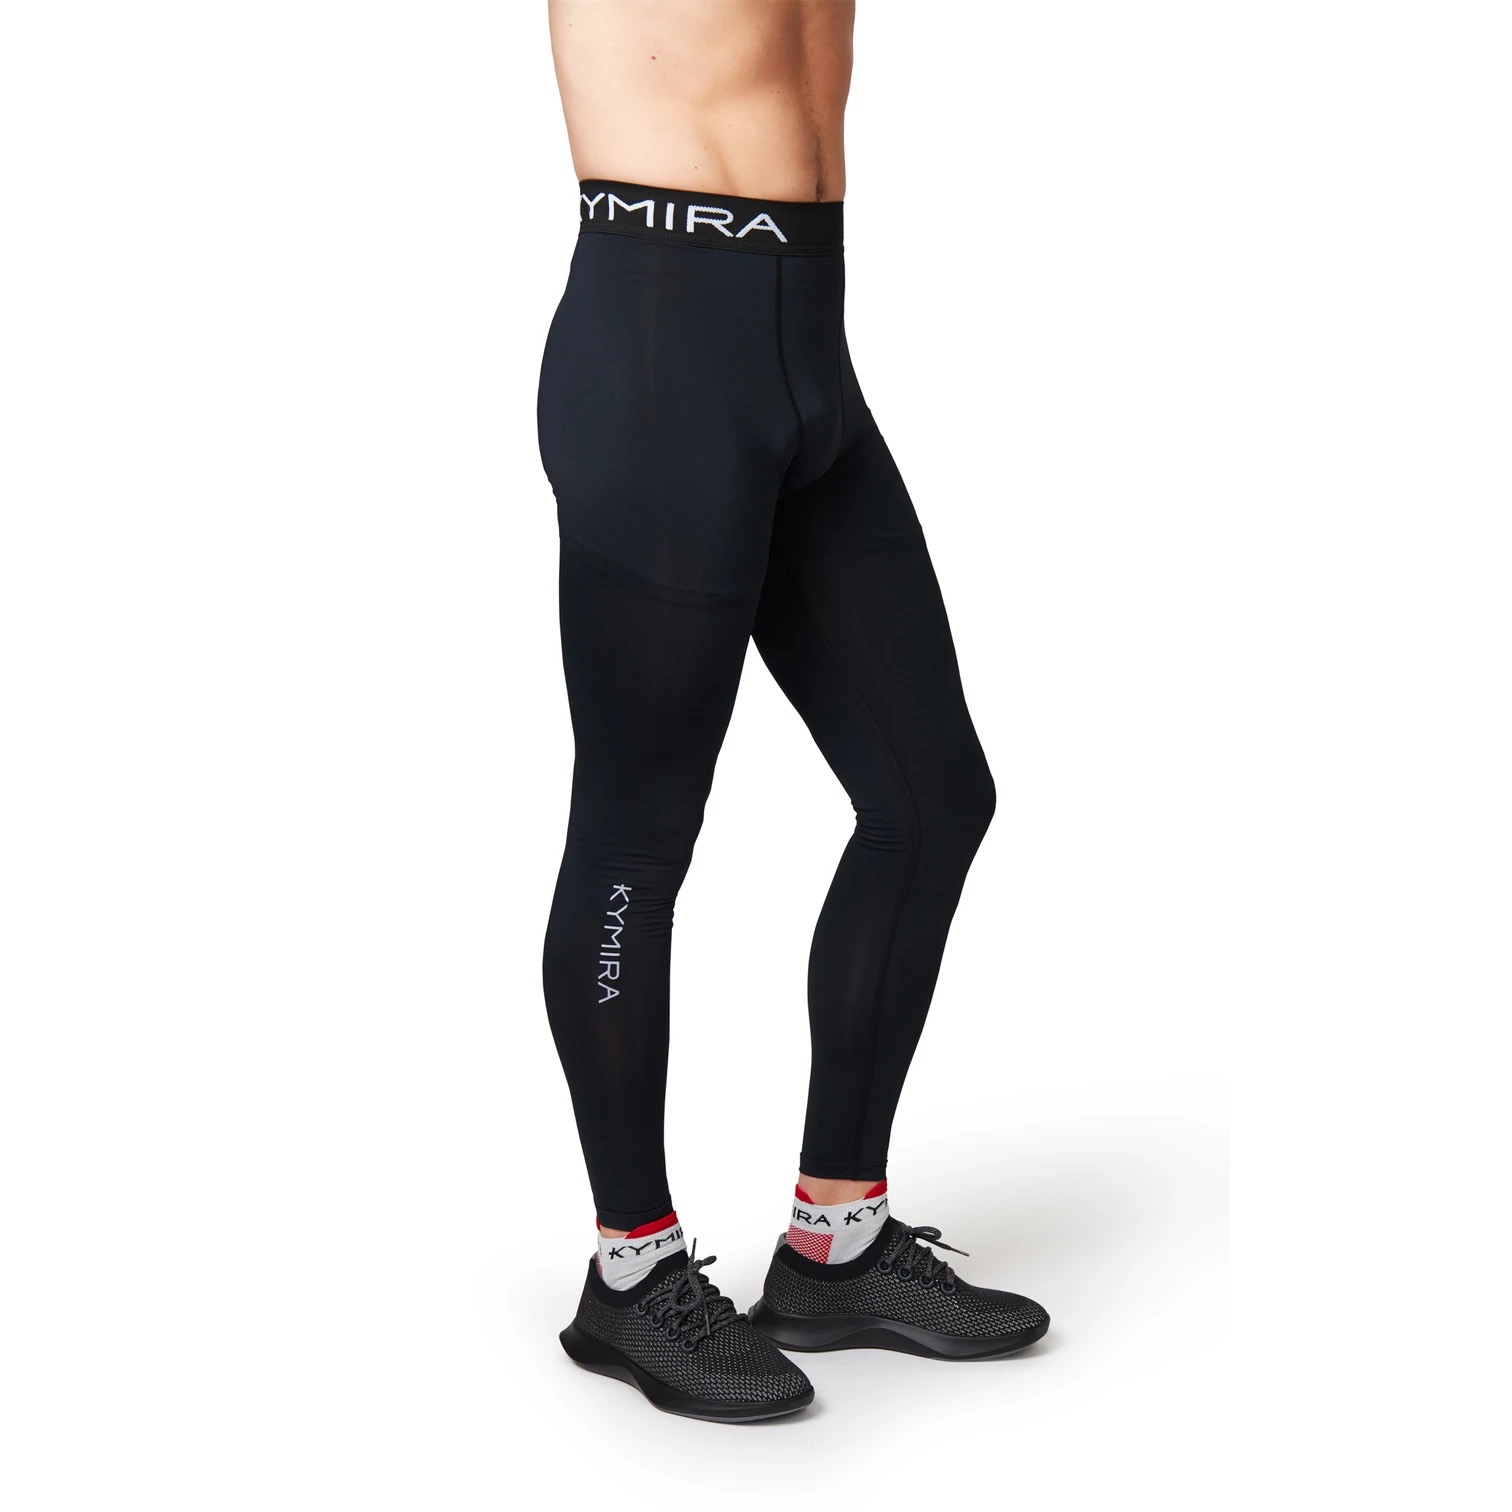 Kymira Infrared Leggings for Men - Bio-Responsive Technology - Sport  Excellence Online Shop